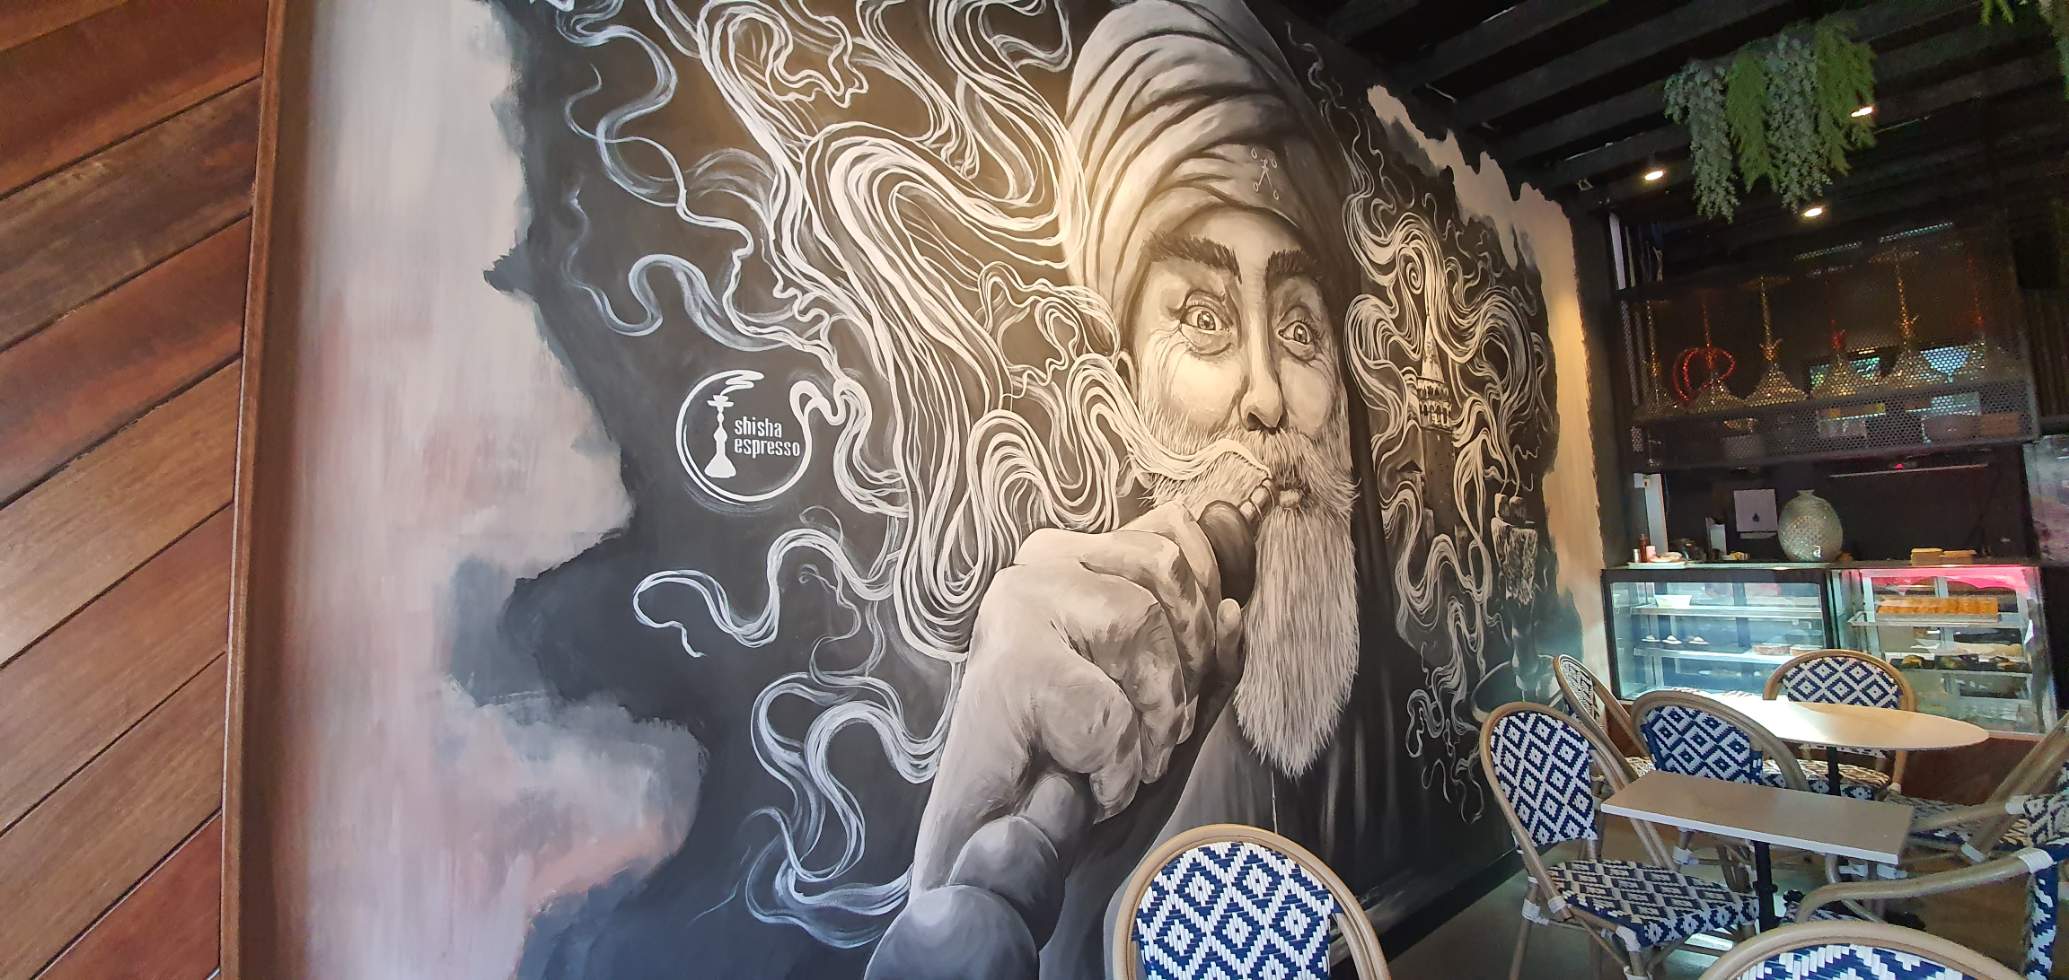 A mural inside Shisha Espresso.